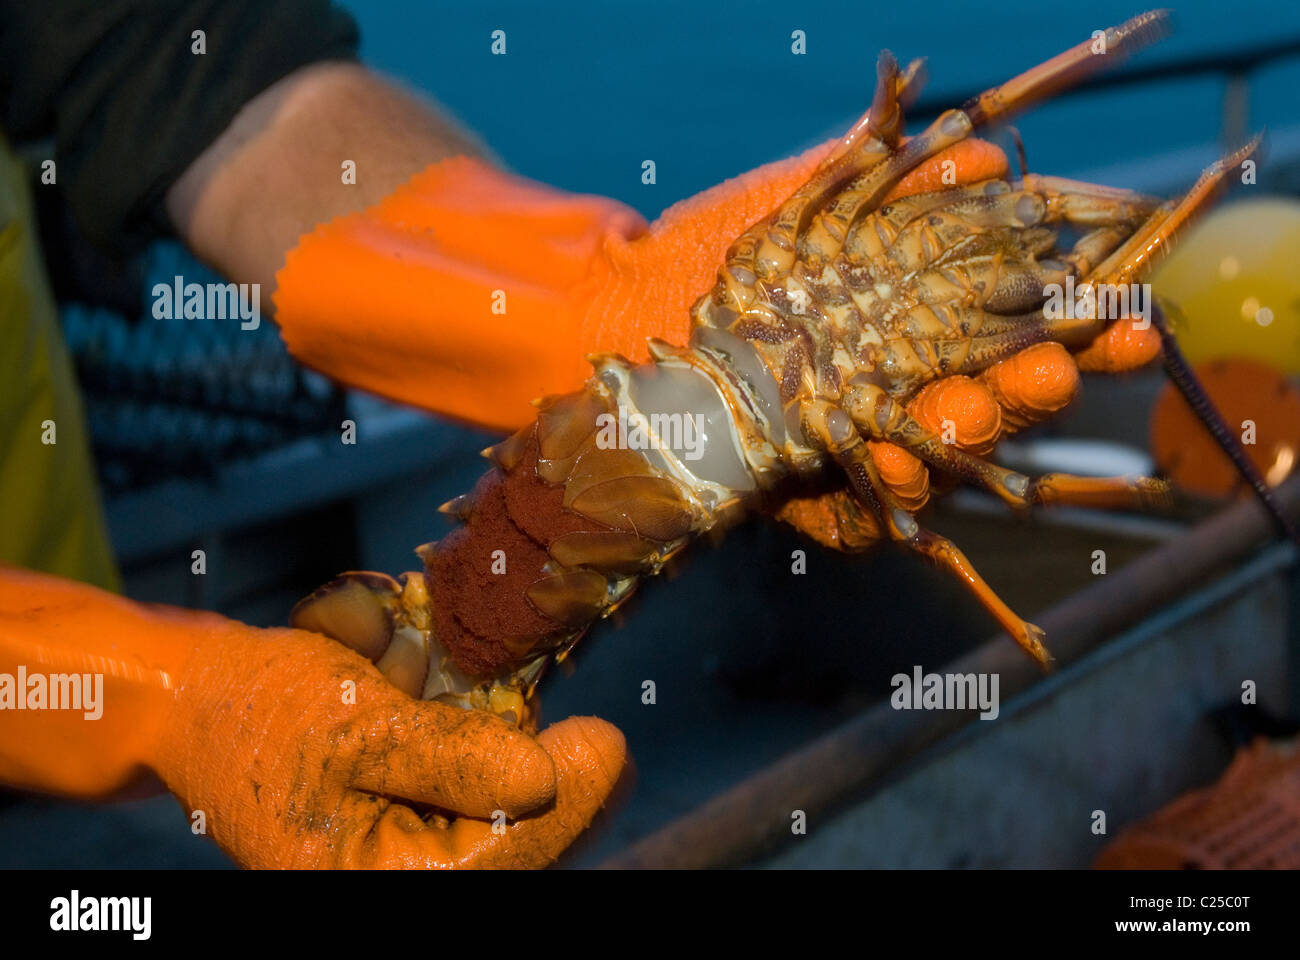 Lobster fishing, Kaikoura, New Zealand Stock Photo